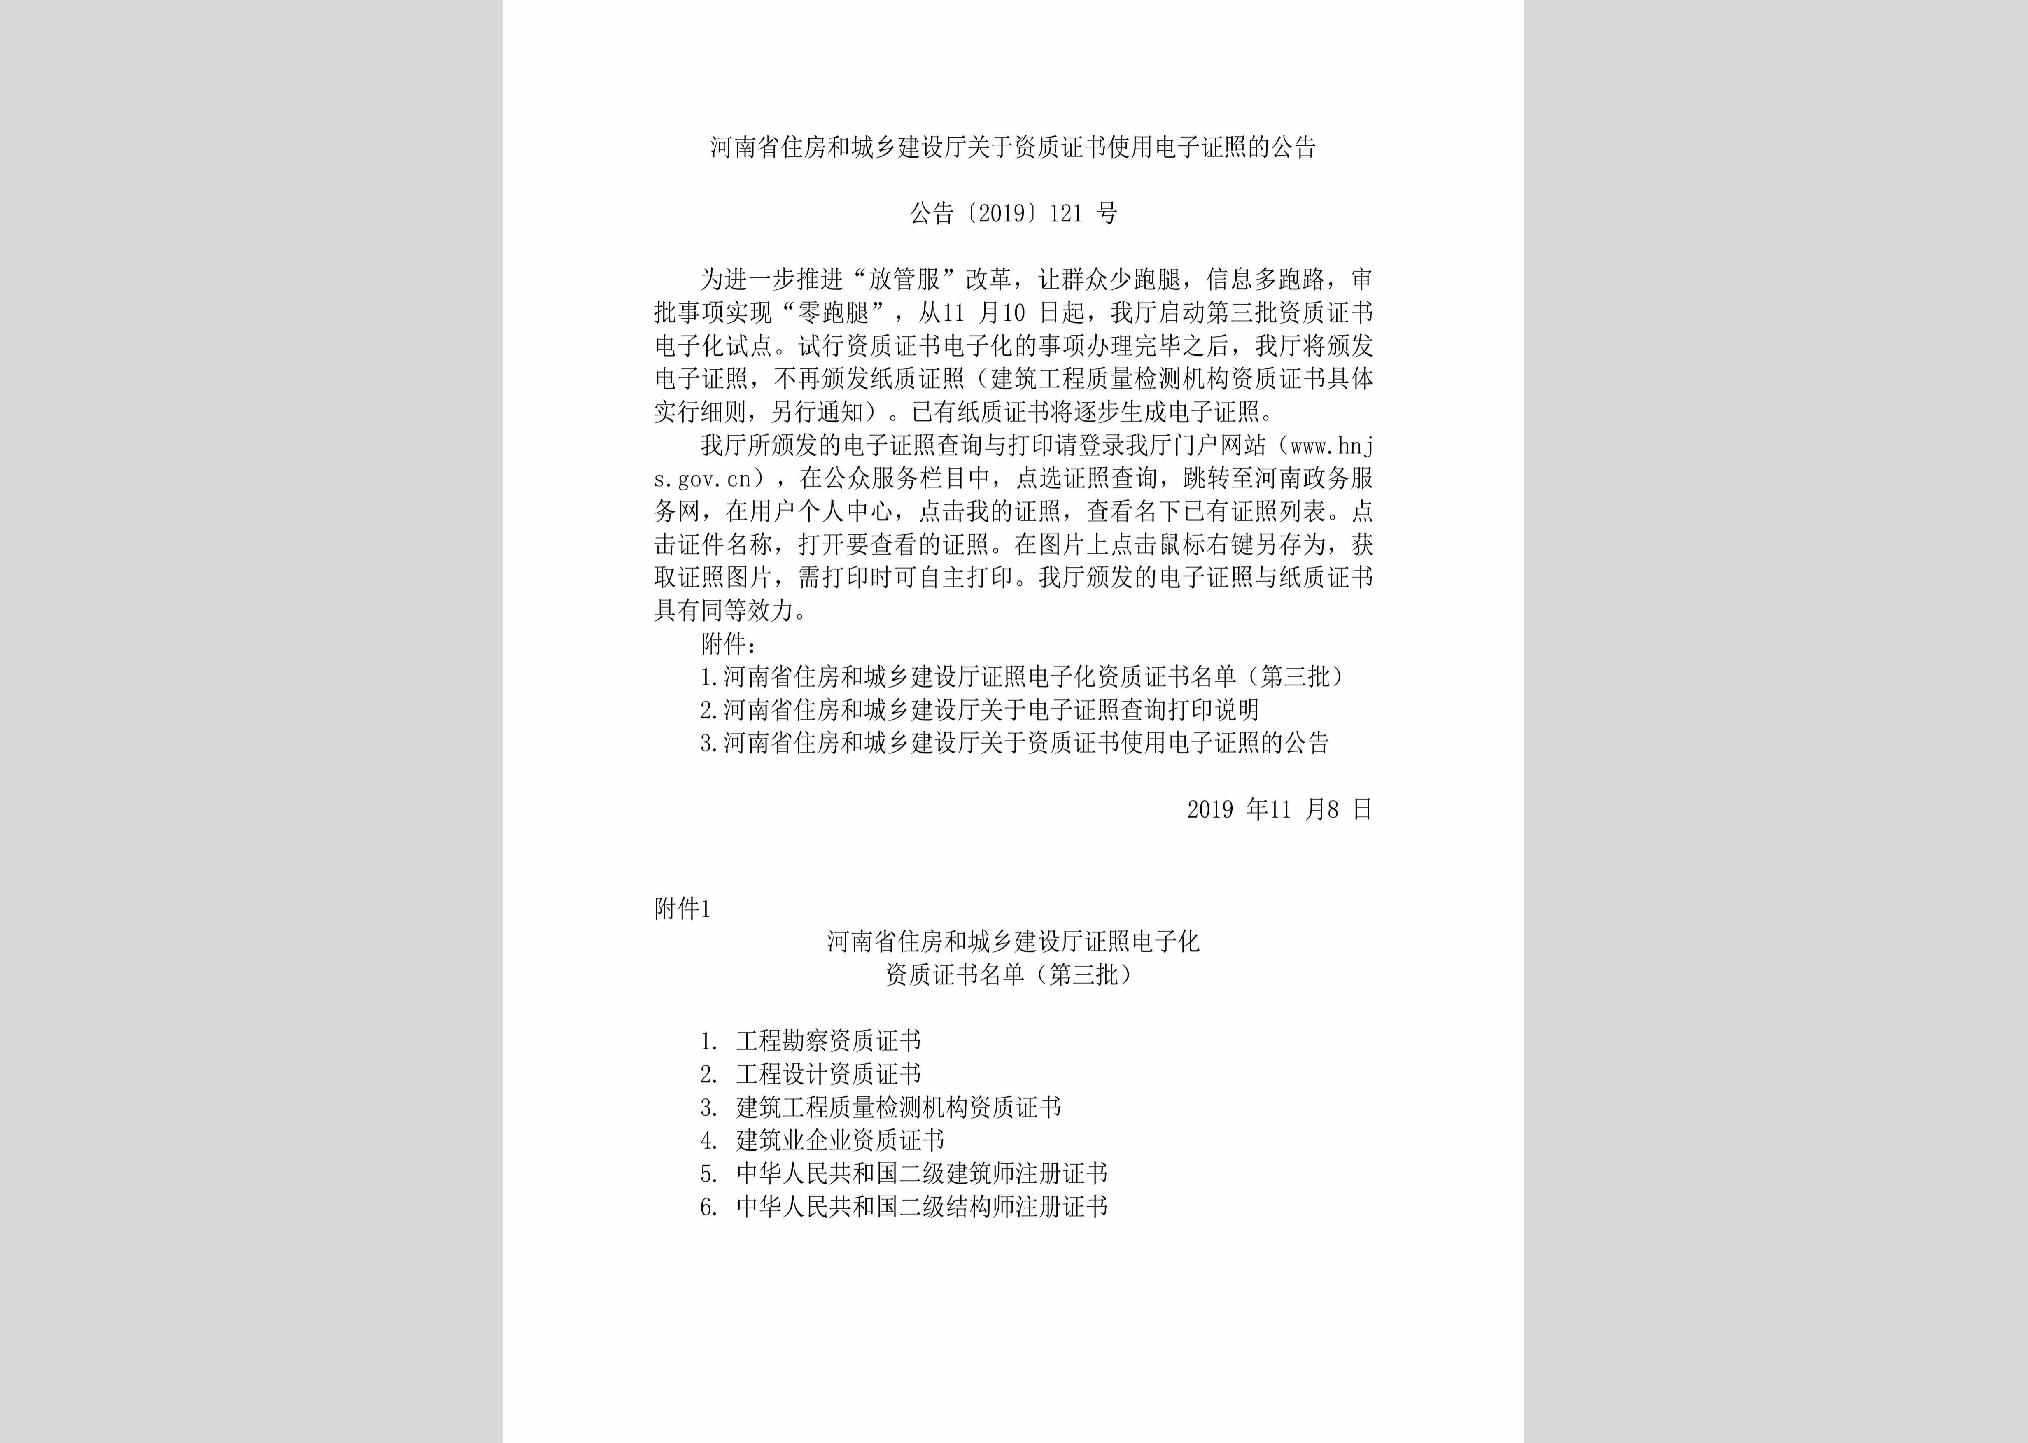 公告[2019]121号：河南省住房和城乡建设厅关于资质证书使用电子证照的公告